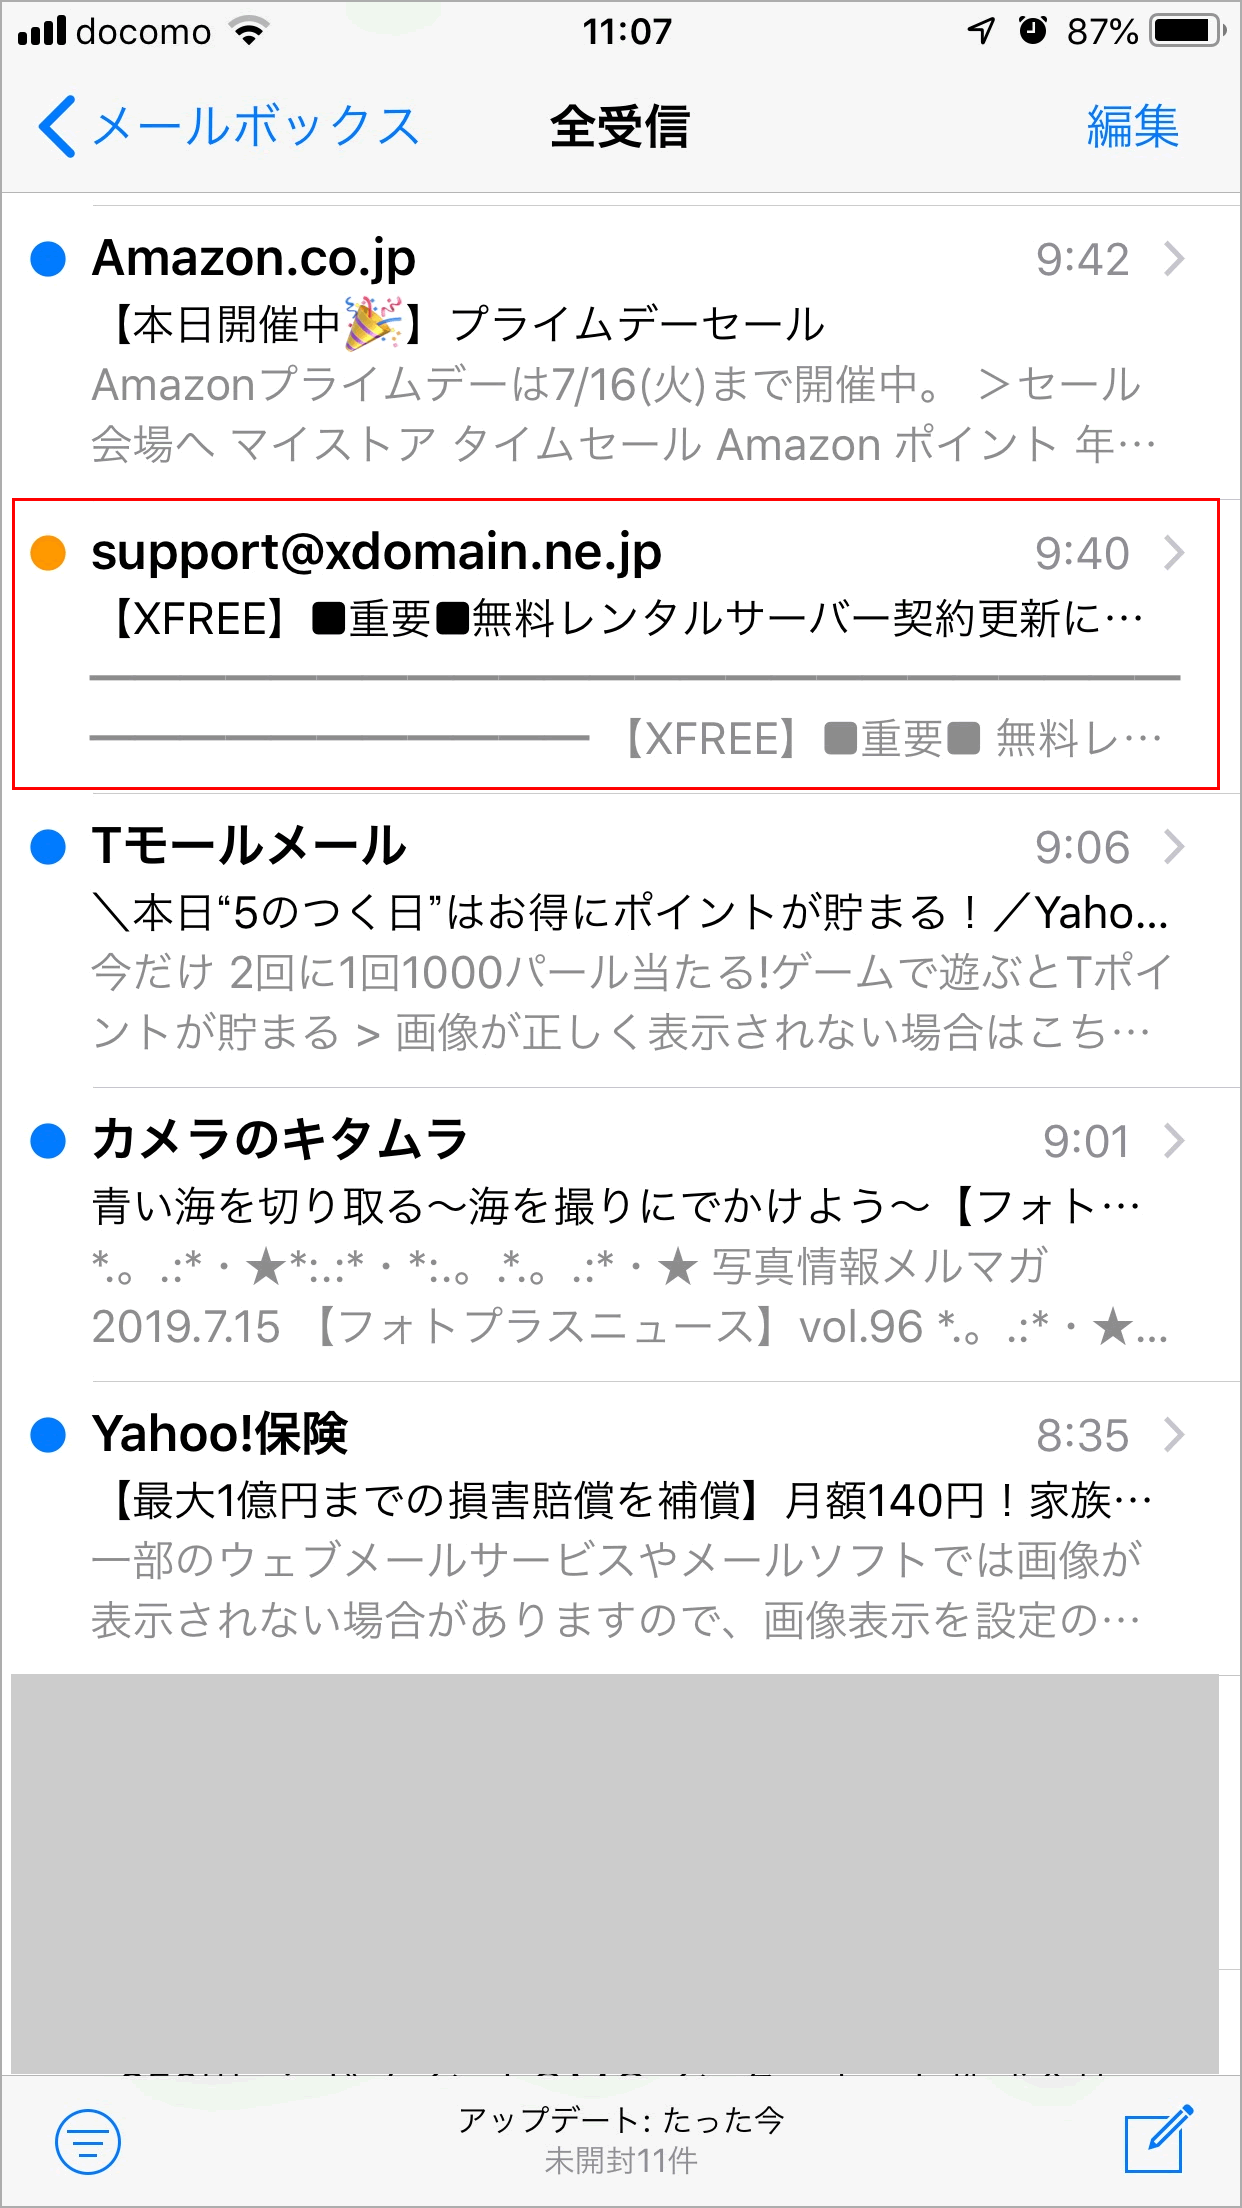 Yahoo!のメール